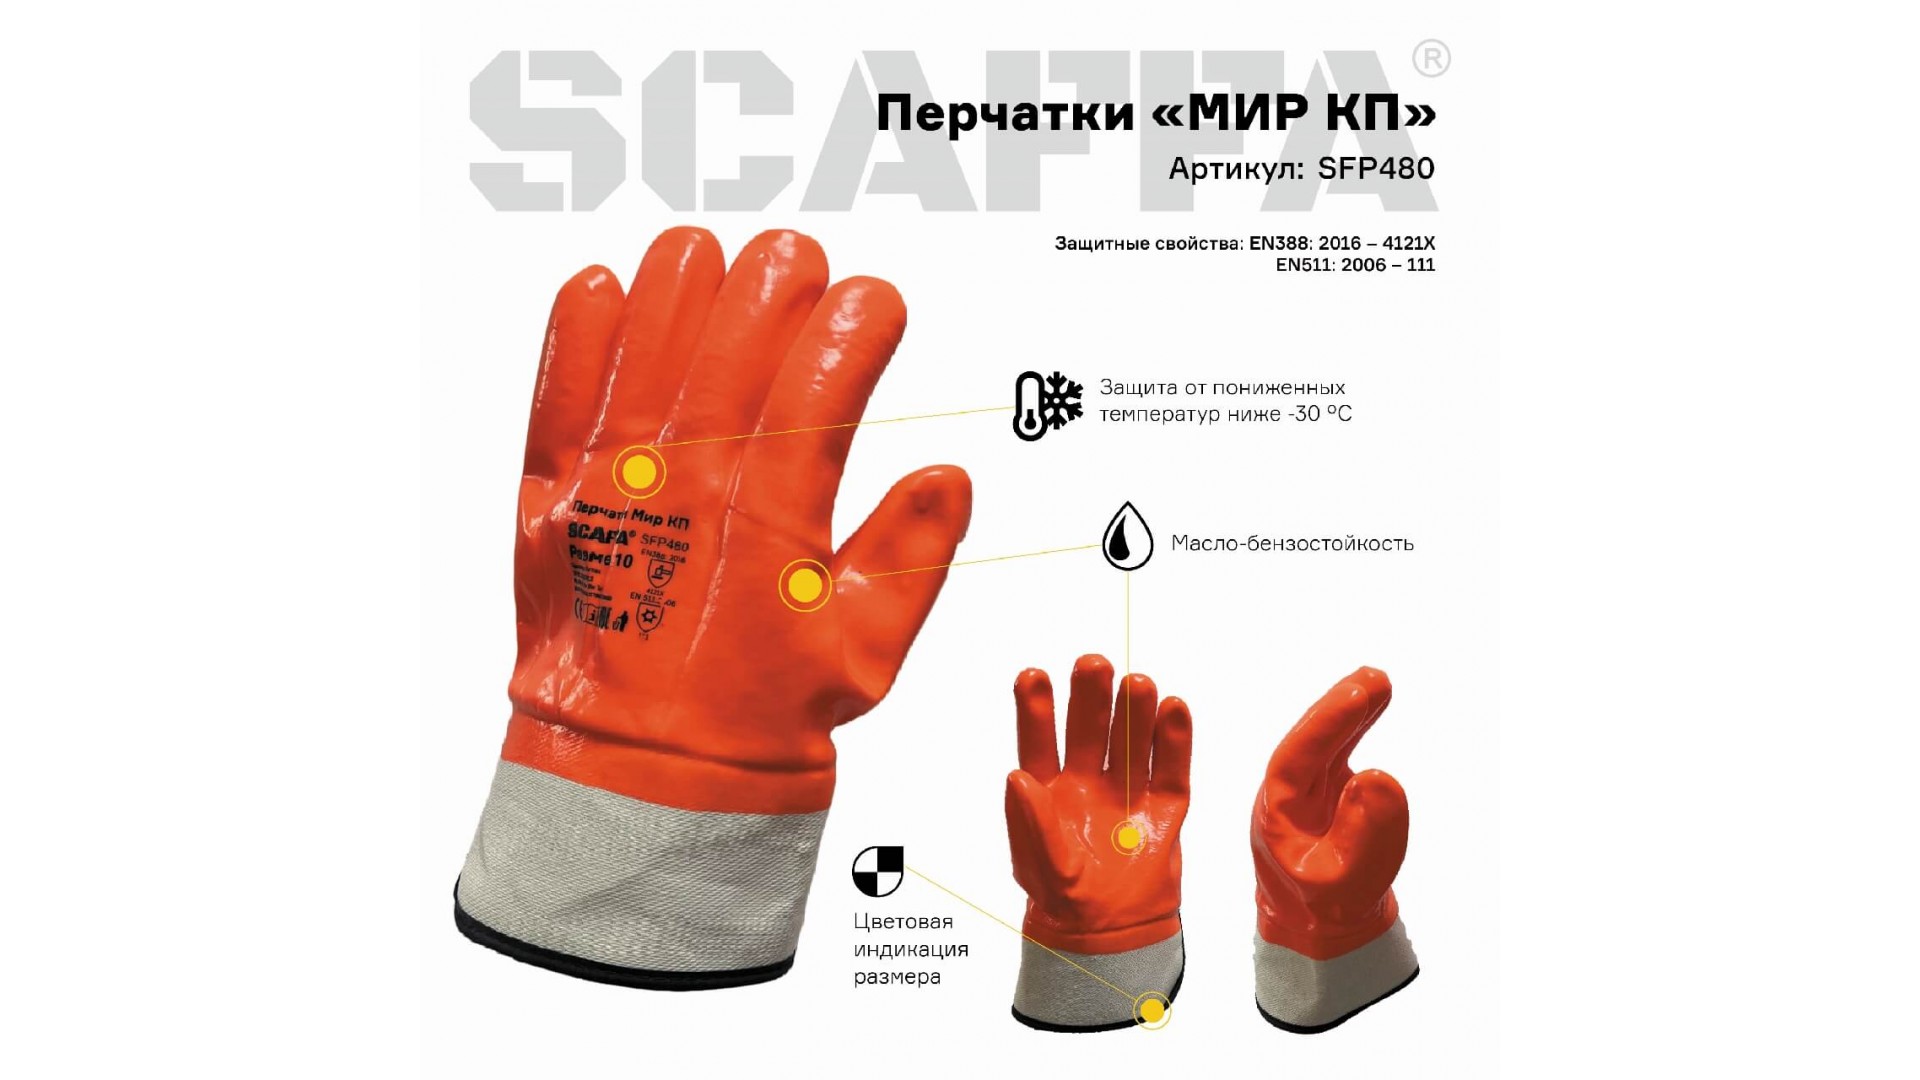 Перчатки МИР КП для защиты от пониженных температур